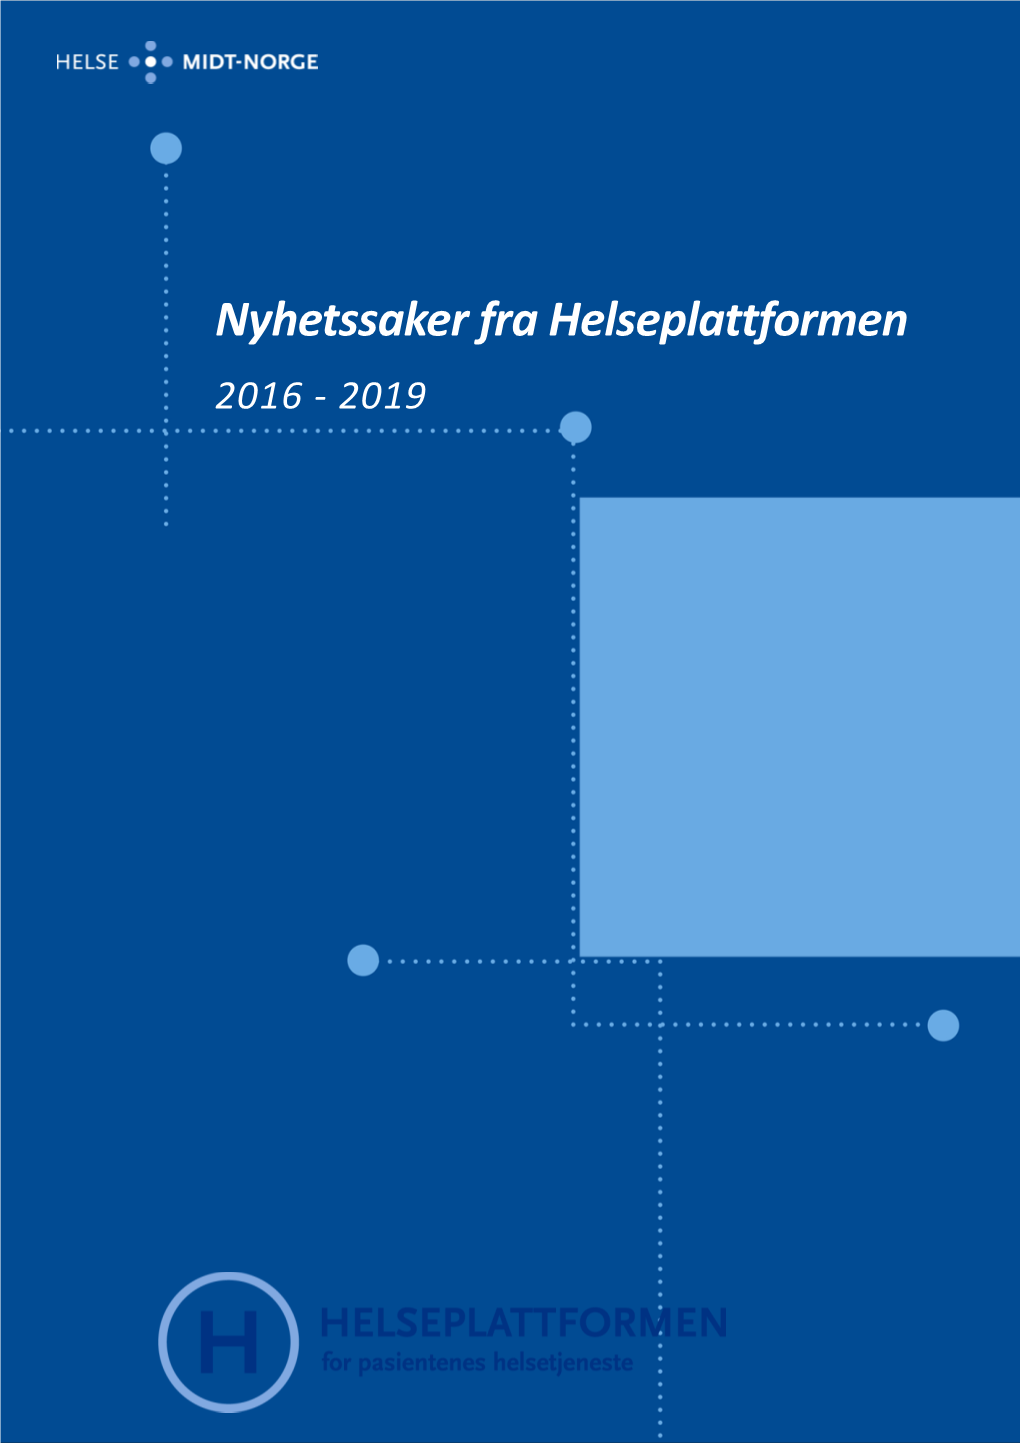 Nyhetssaker Fra Helseplattformen 2016 - 2019 2.1.2020 Se Til Midt-Norge - Helse Midt-Norge RHF